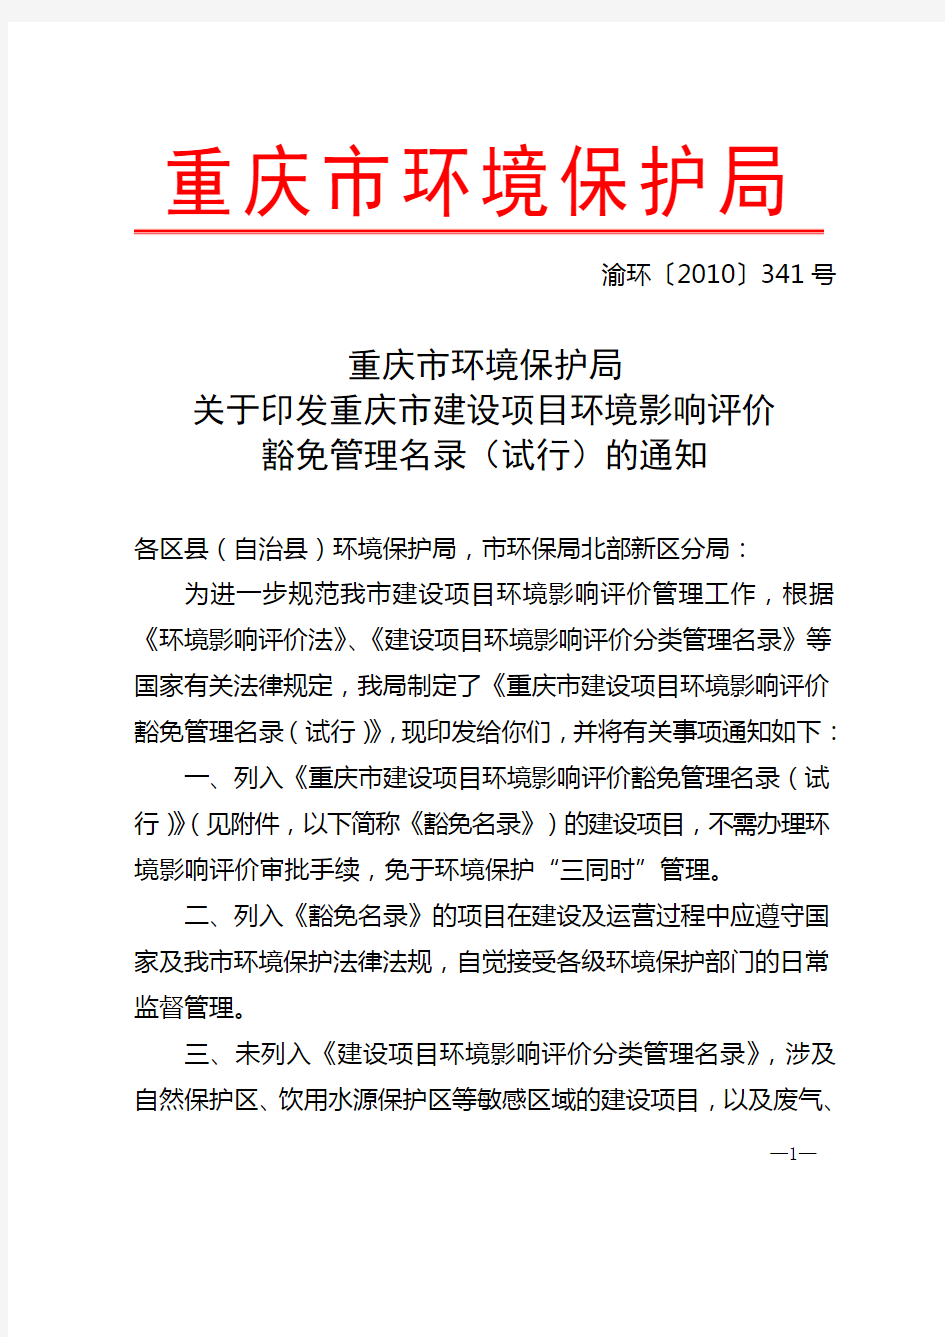 重庆市环境保护局关于印发《重庆市建设项目环境影响评价豁免管理名录(试行)》的通知